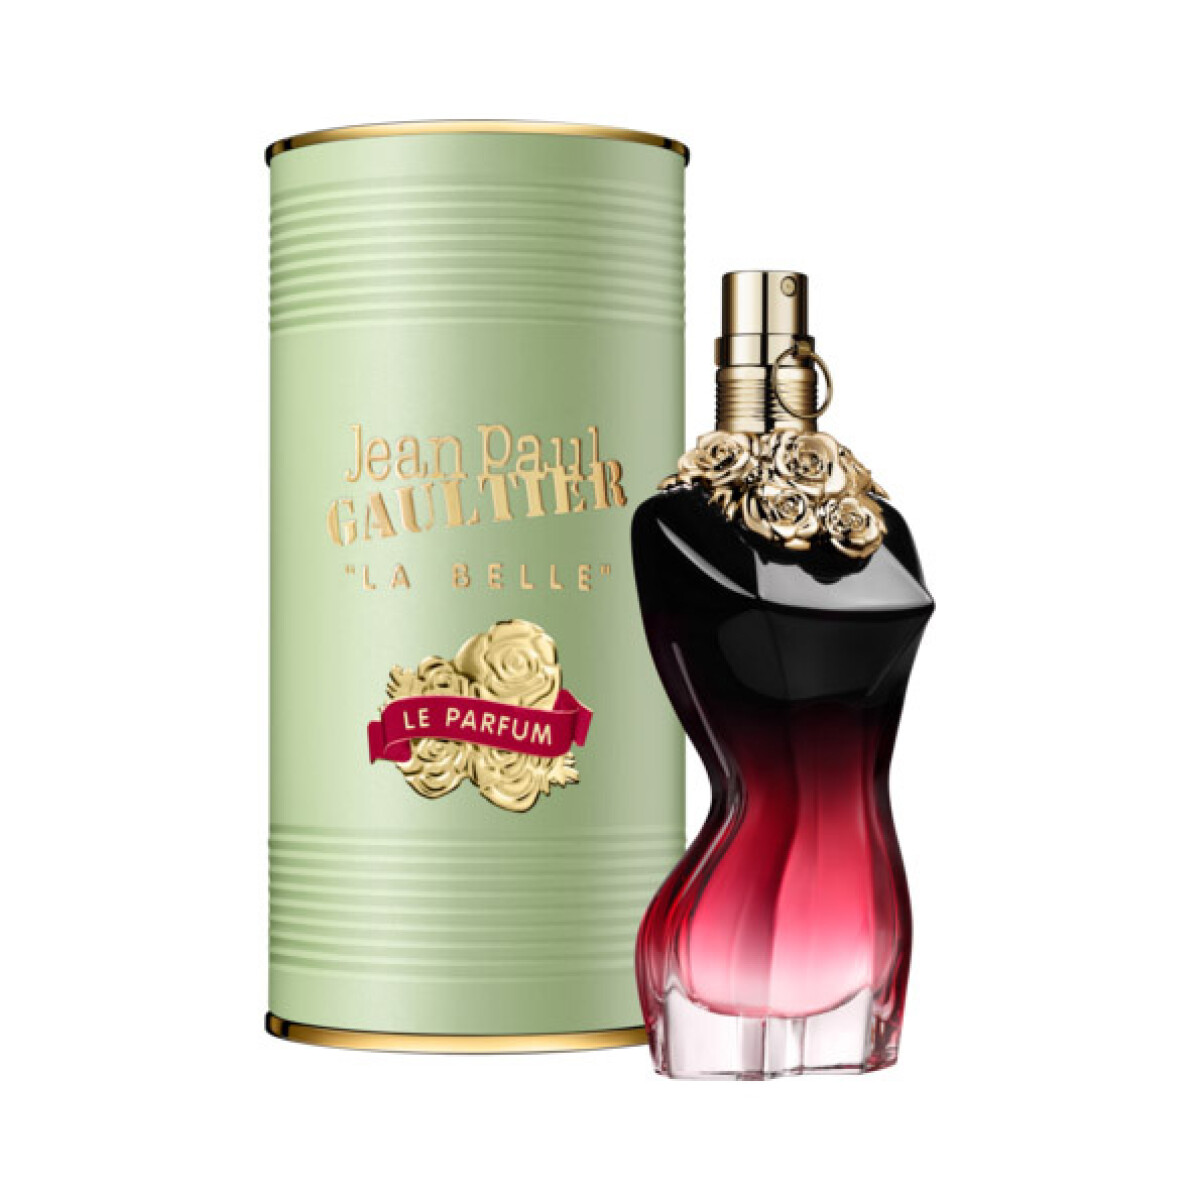 Perfume Jean Paul Gaultier La Belle Le Parfum 50Ml 